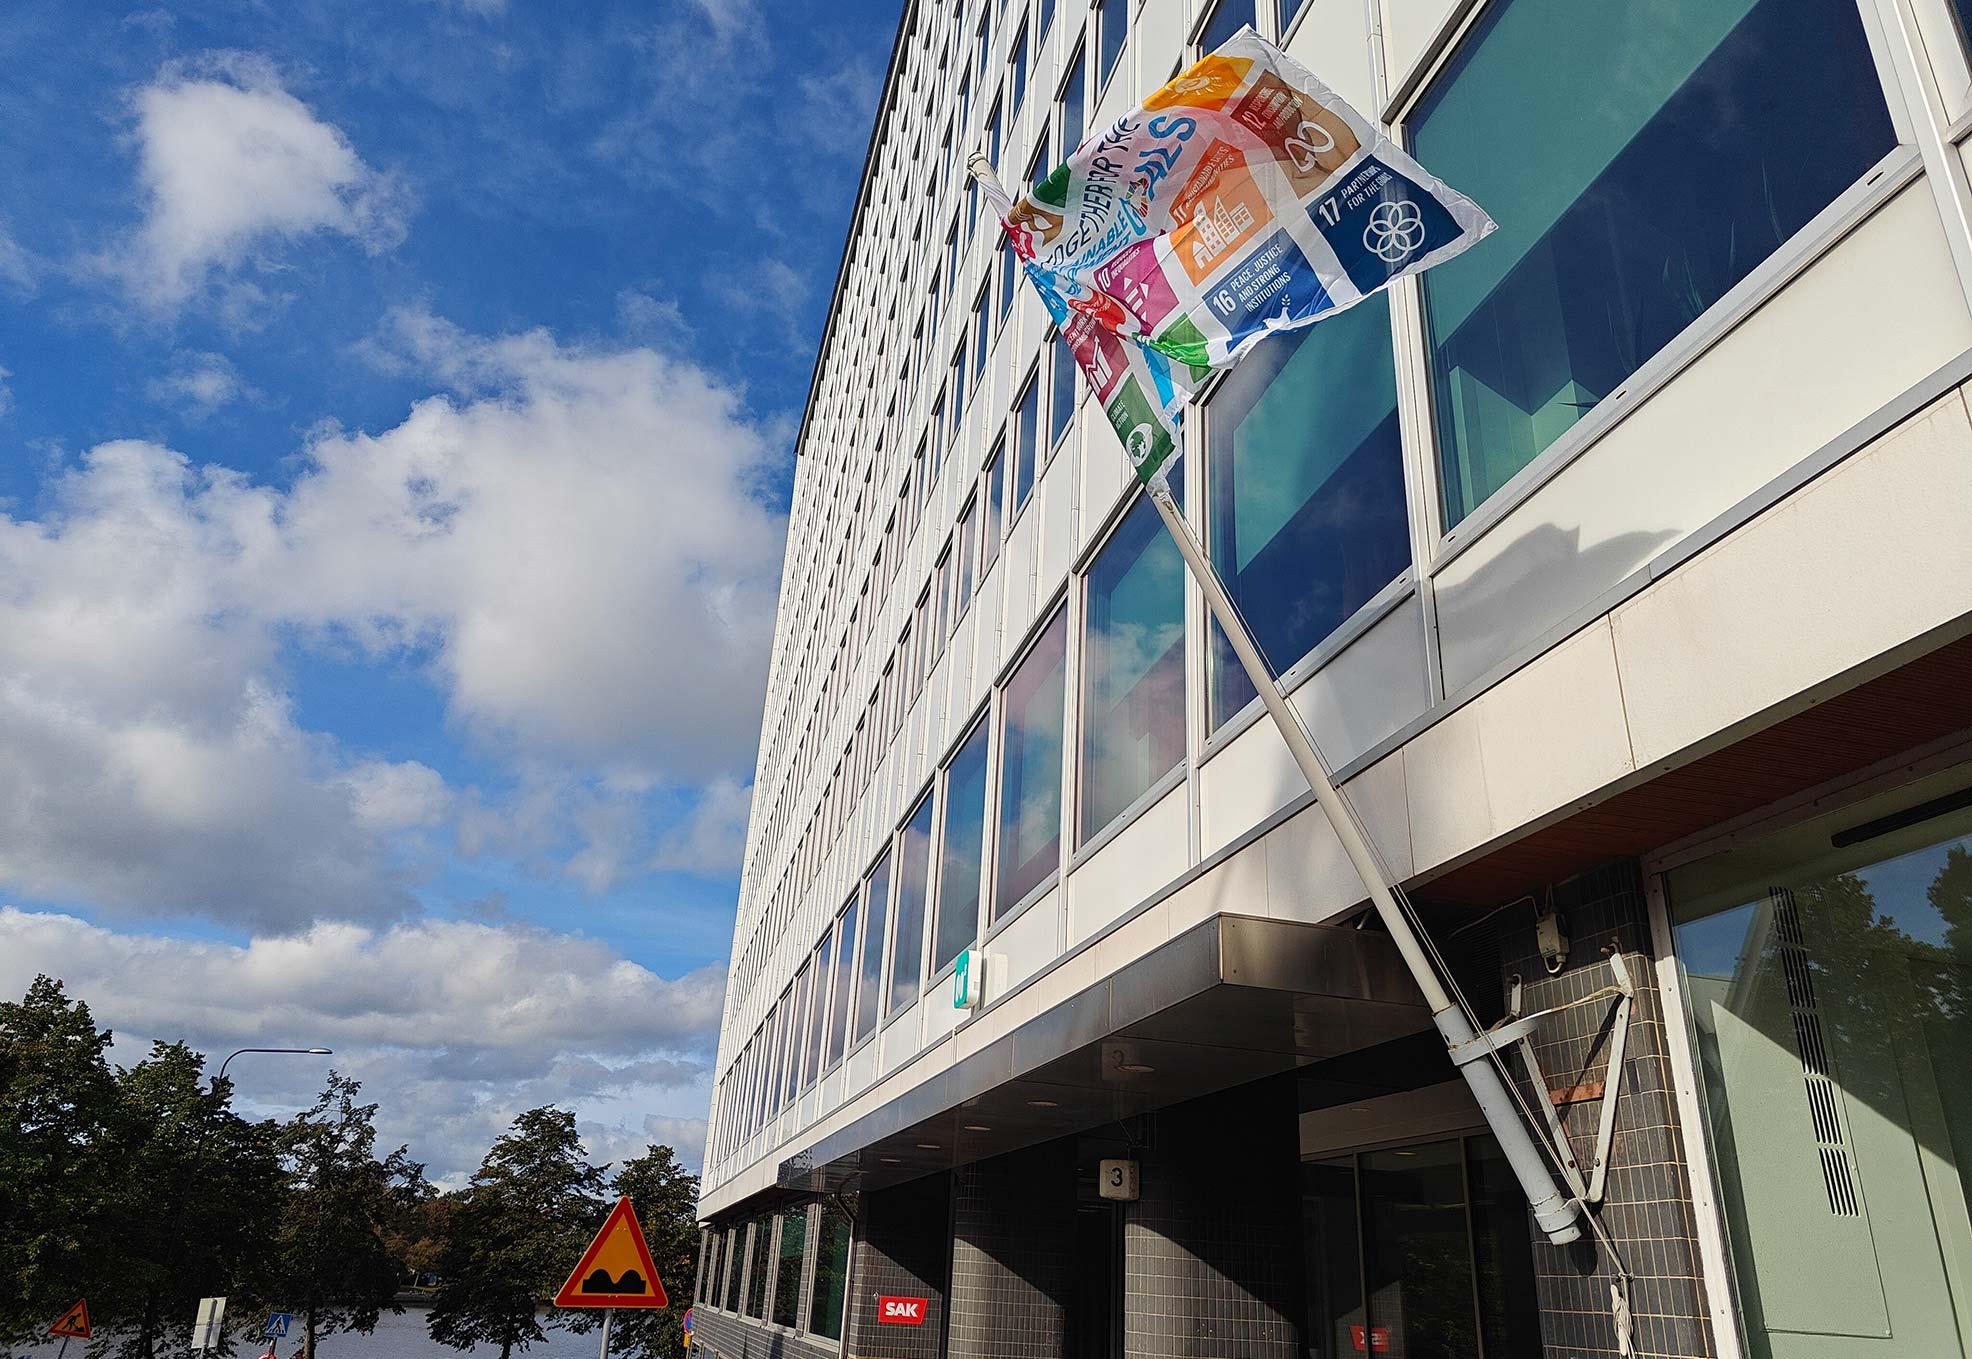 Kestävän kehityksen lippu liehuu SAK:n keskustoimiston edustalla.